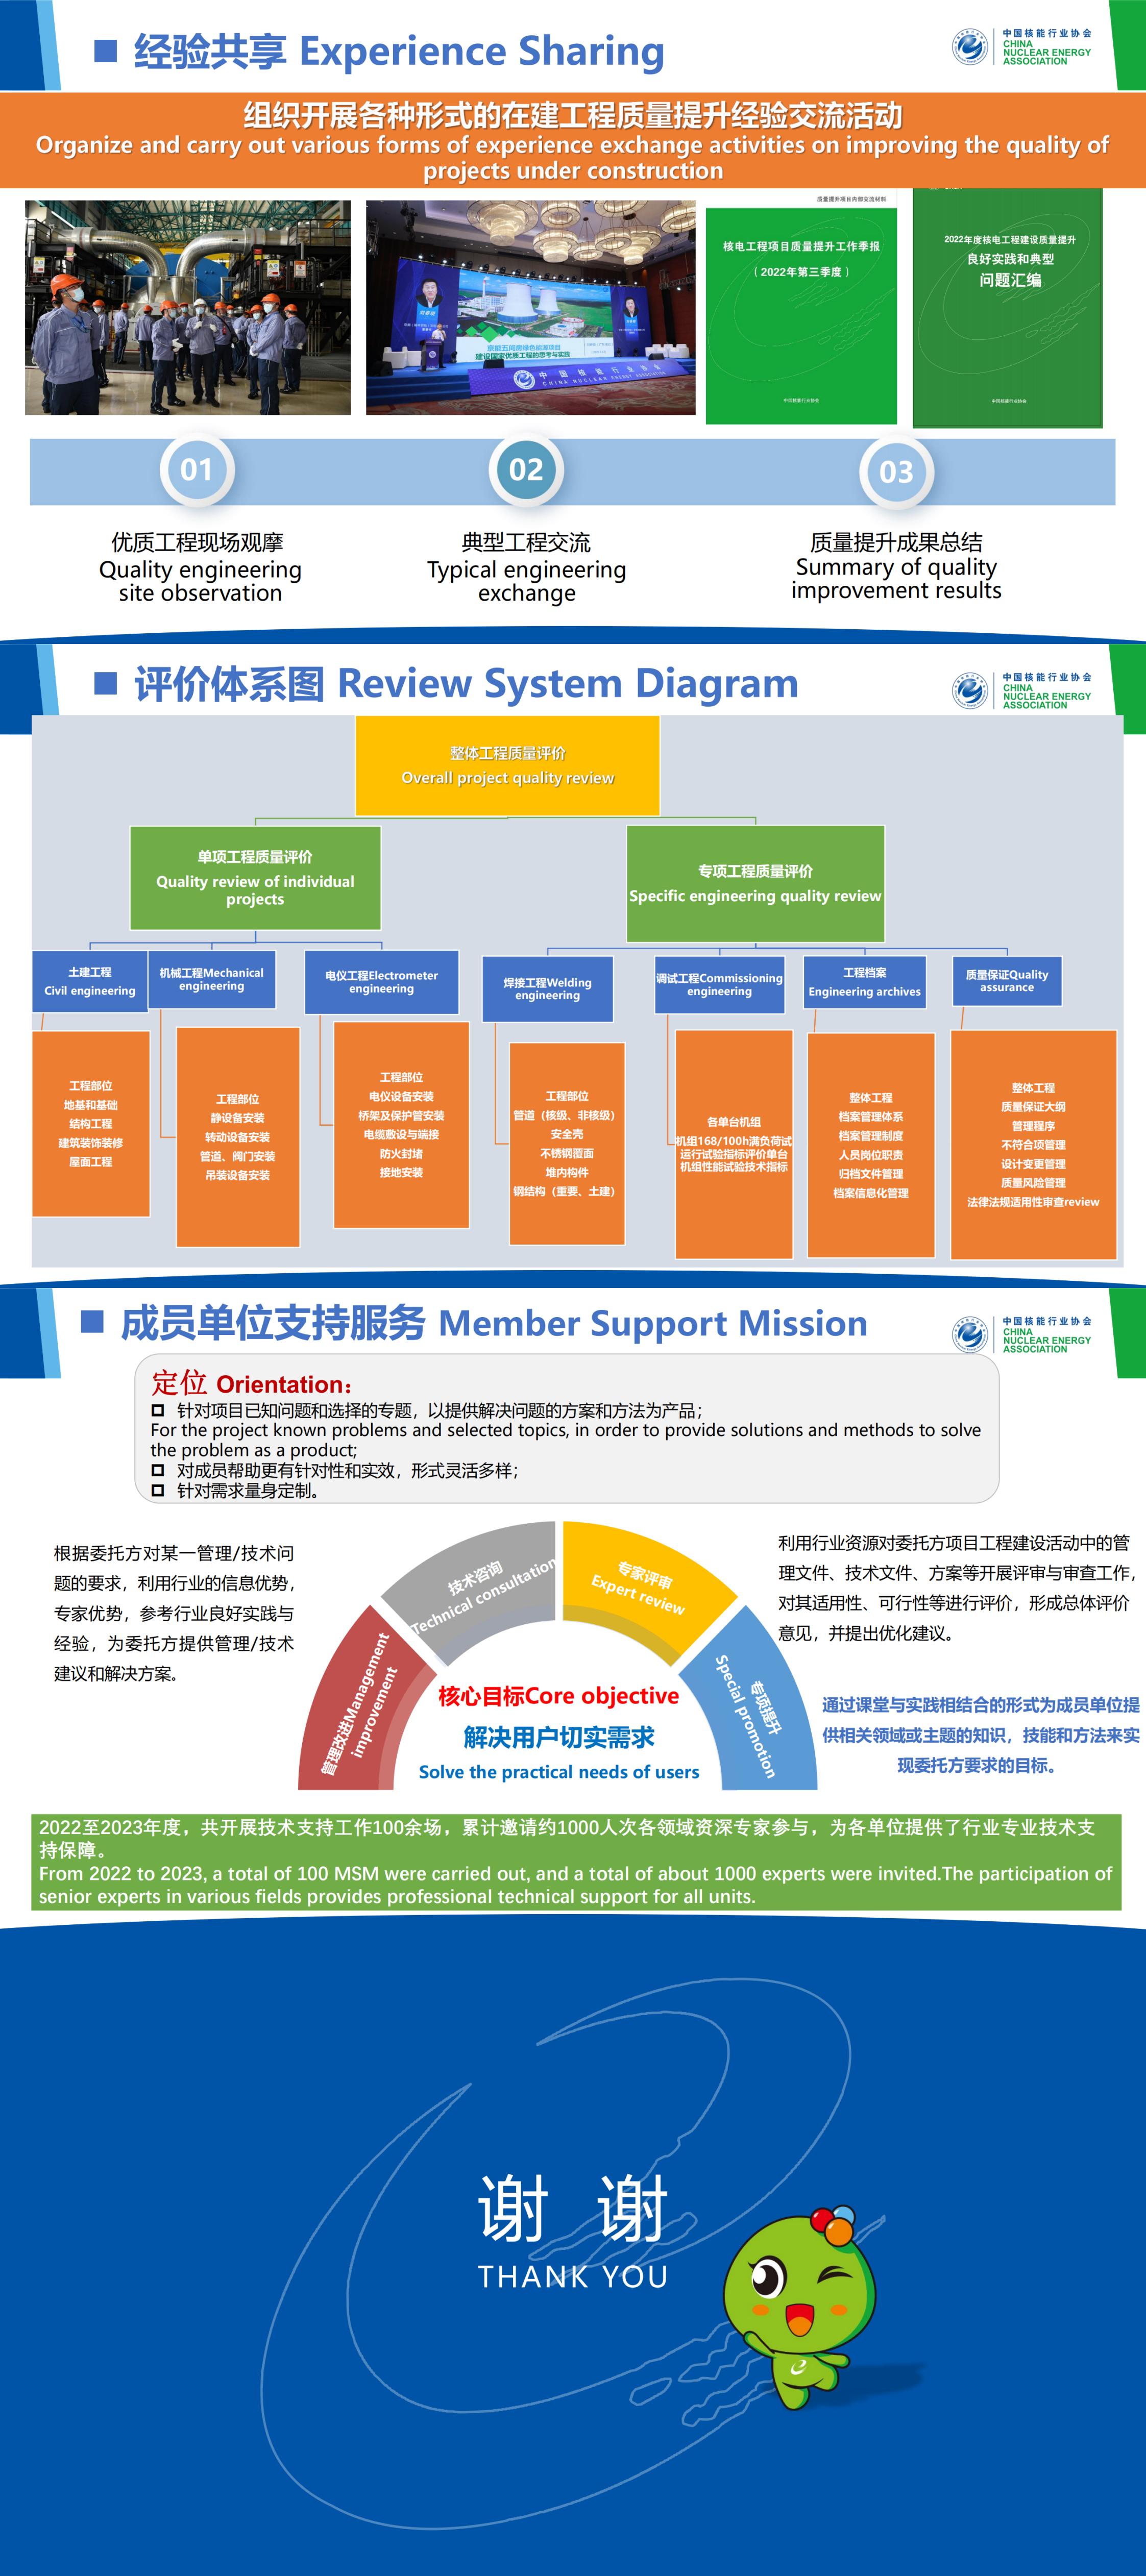 0416更新-18_07_W Zheng_Supporting New Nuclear Power Utilities and Projects_01.jpg